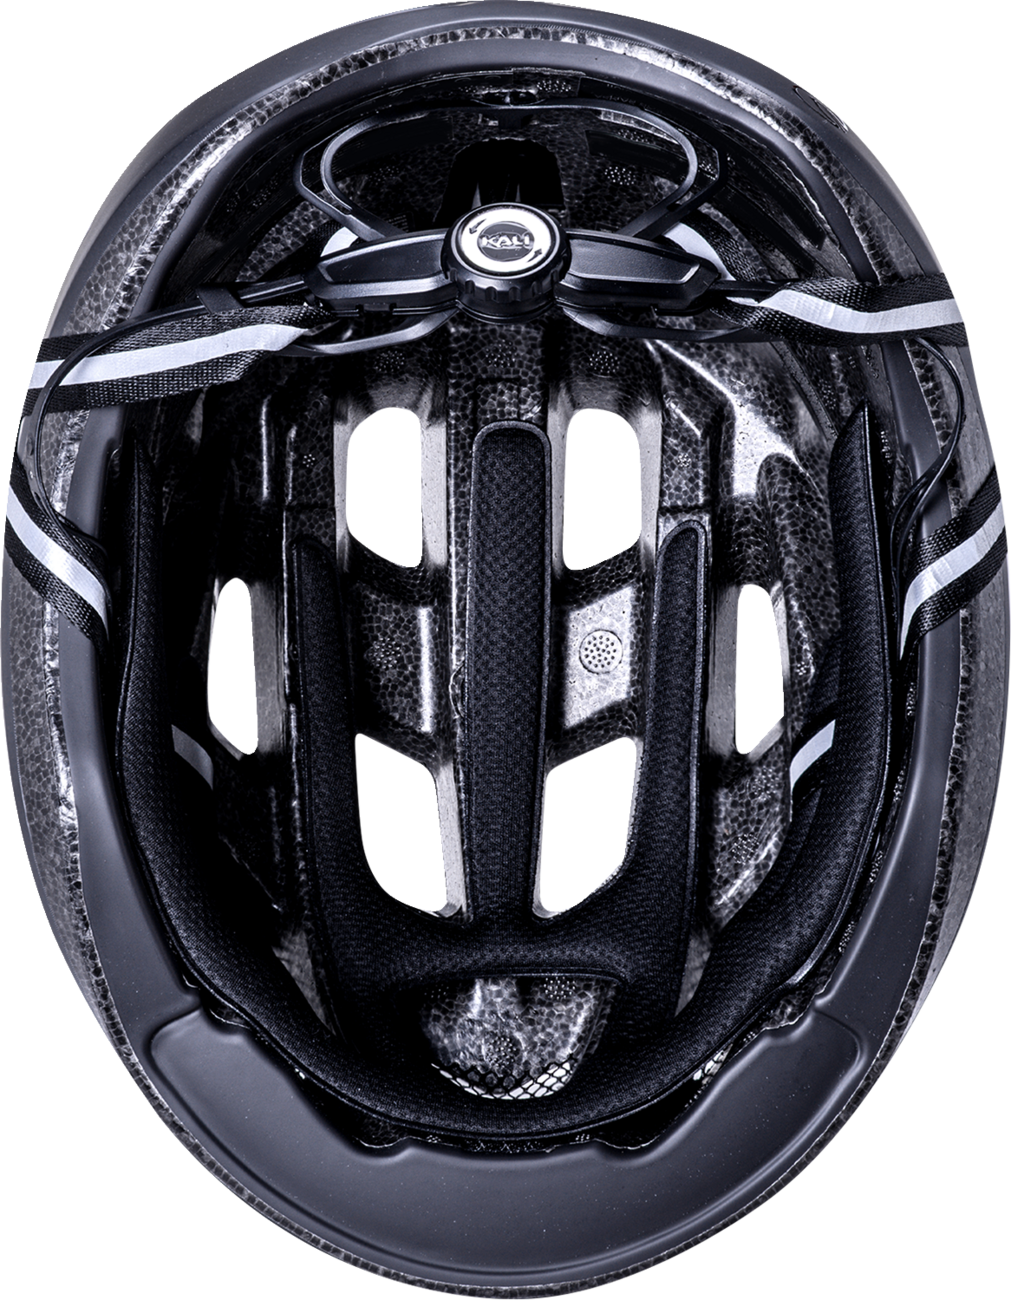 KALI Central Lit Helmet - Matte Black - S/M 0250521216